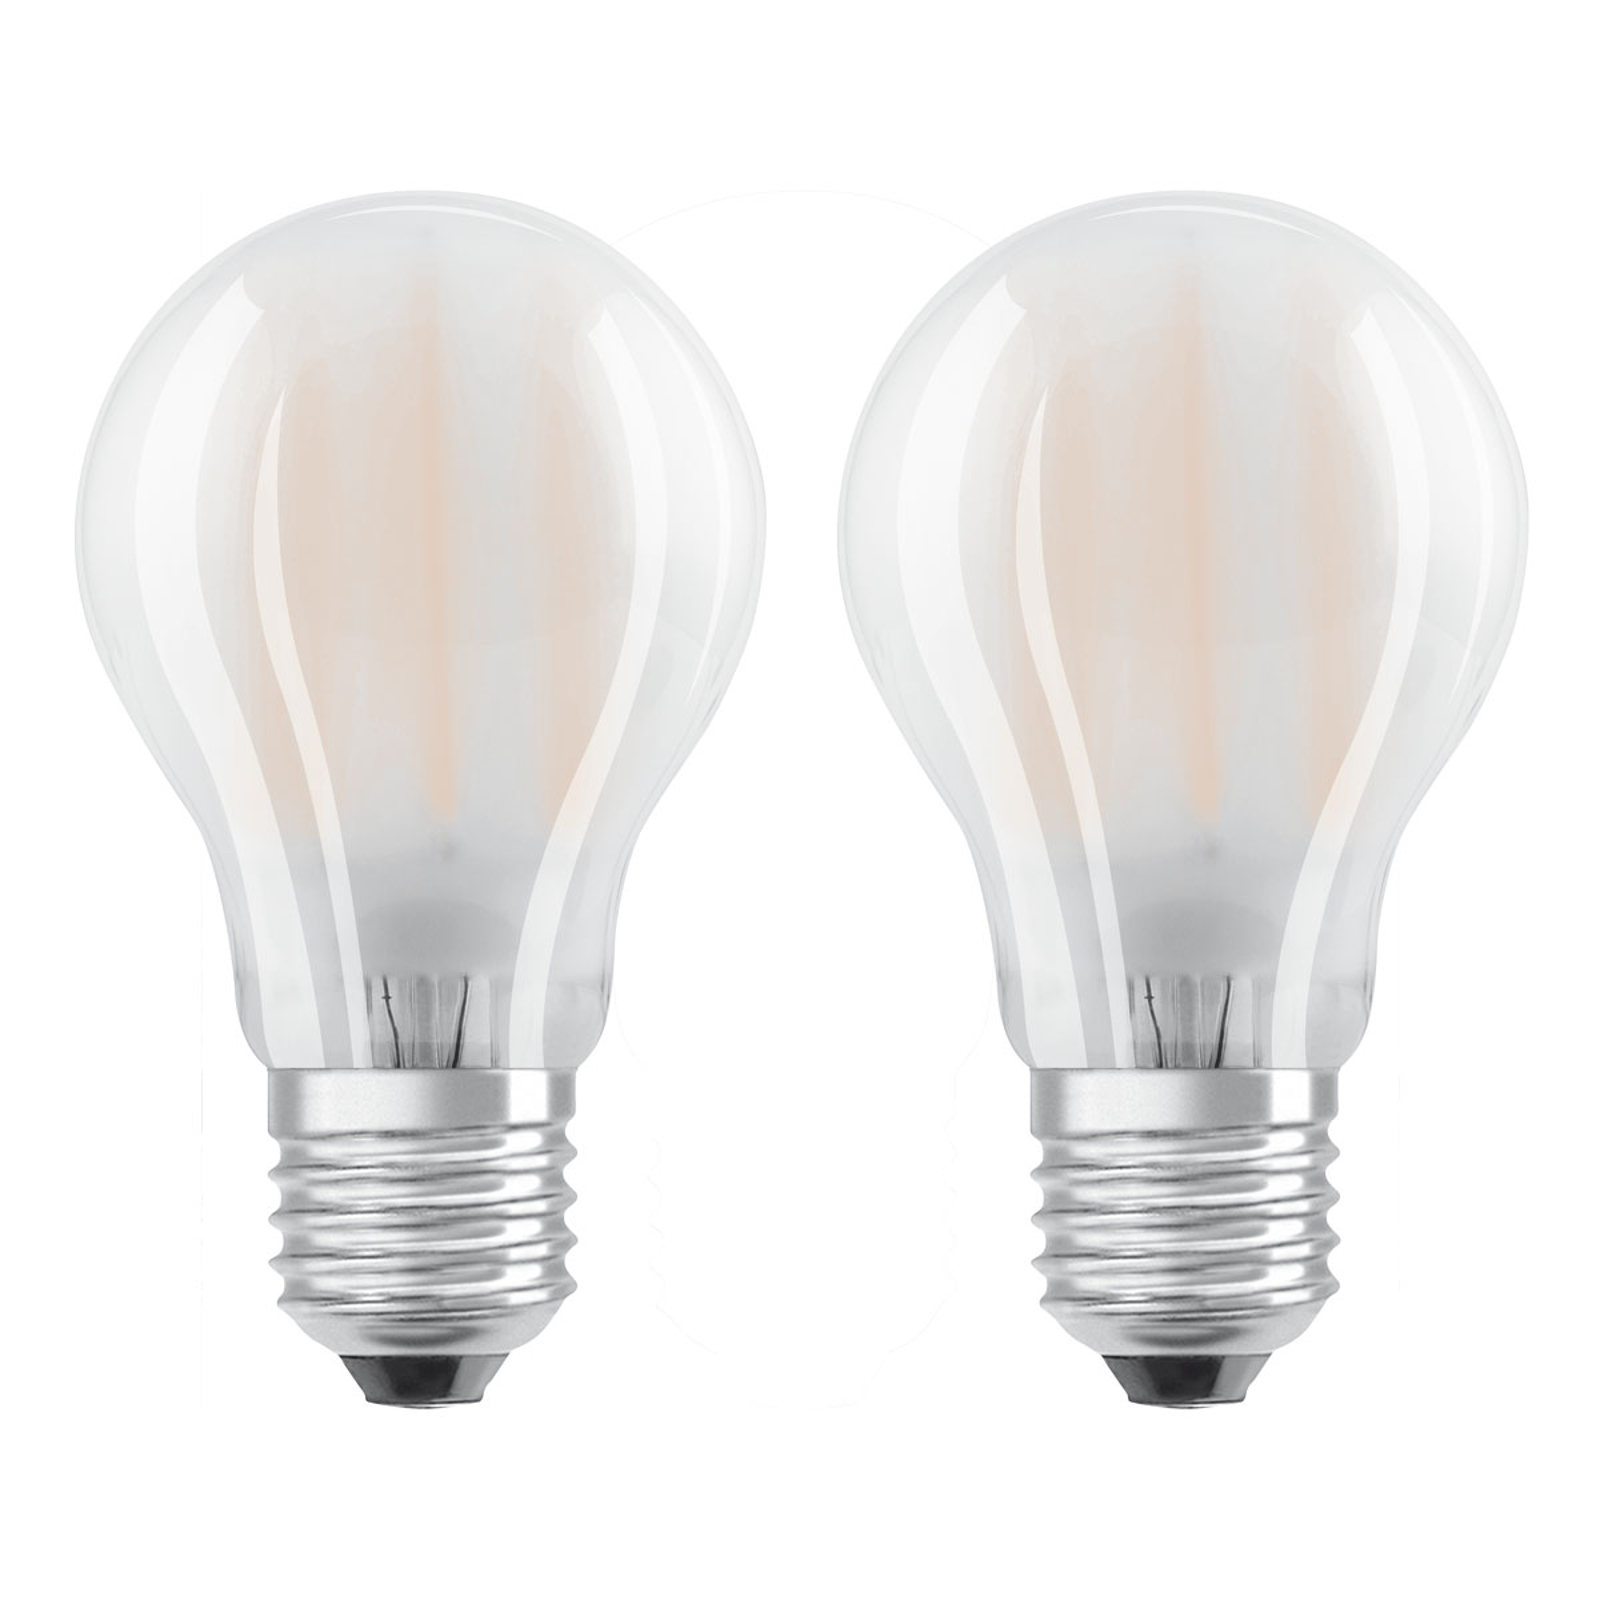 OSRAM-LED-lamppu E27 4W lämmin valkoinen 2 kpl